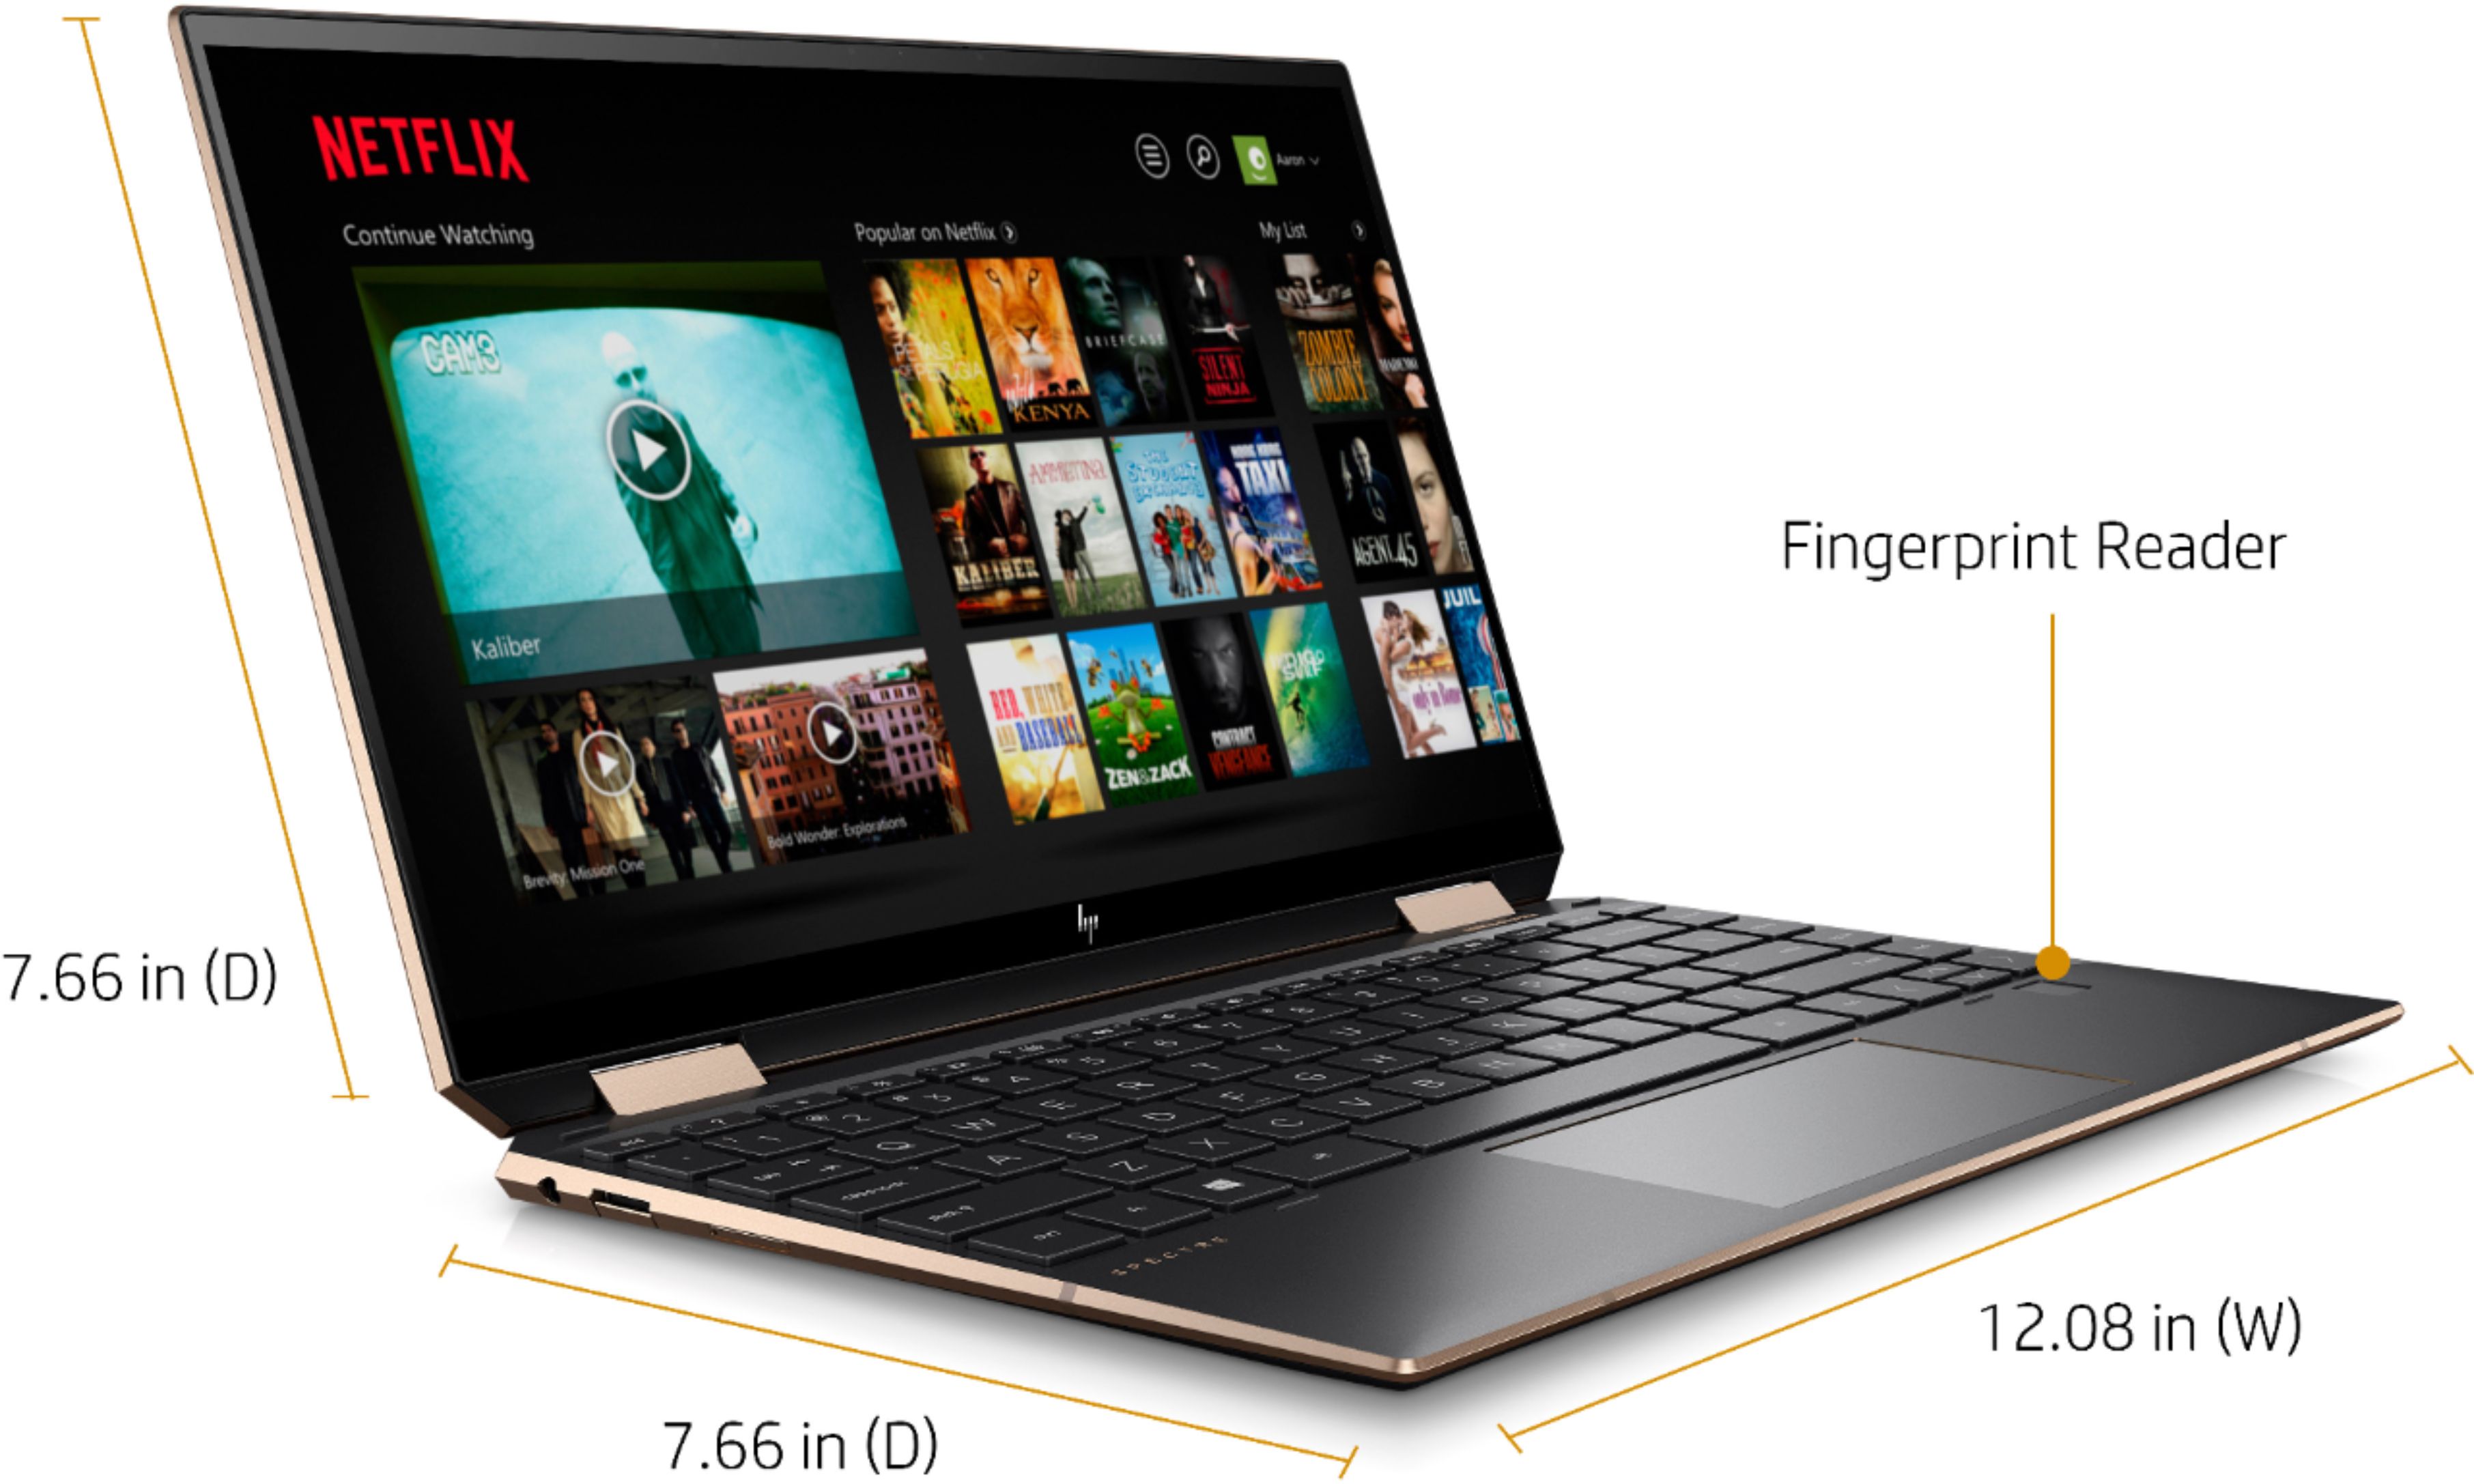 HP Spectre x360 16-f1003nf, 16 pouces convertible en tablette multimédia  avec écran OLED 4K – LaptopSpirit